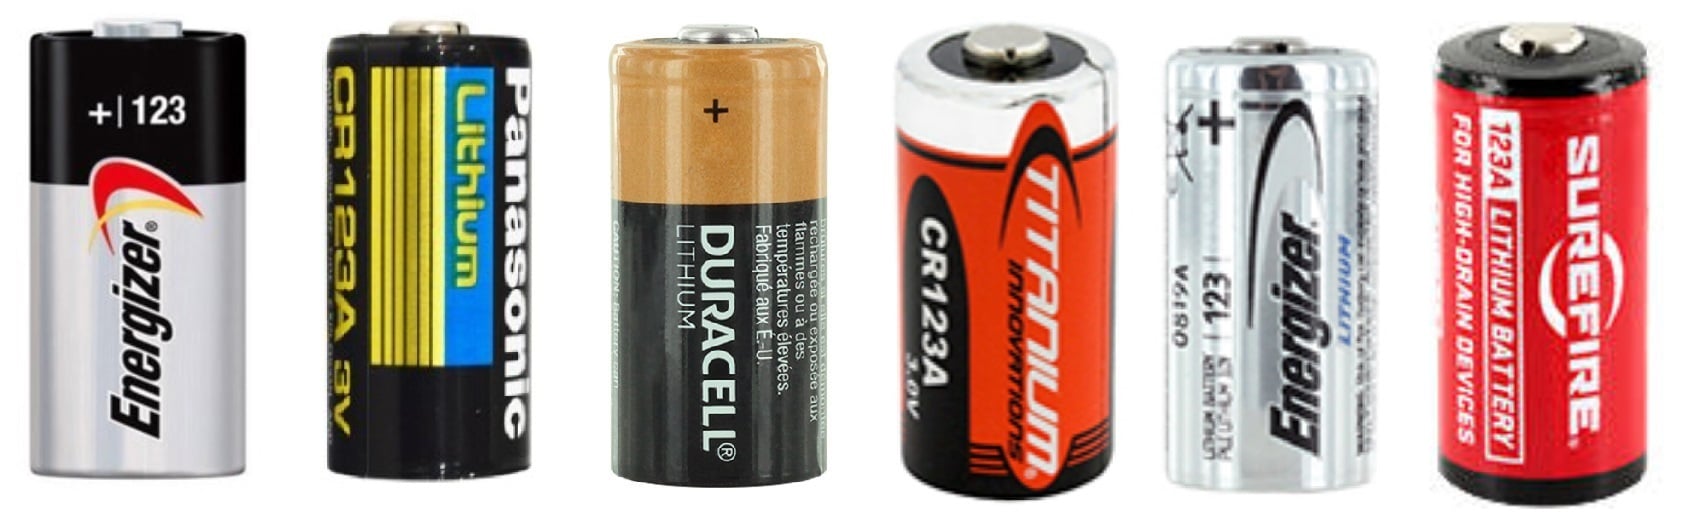 A123_Batteries.jpg